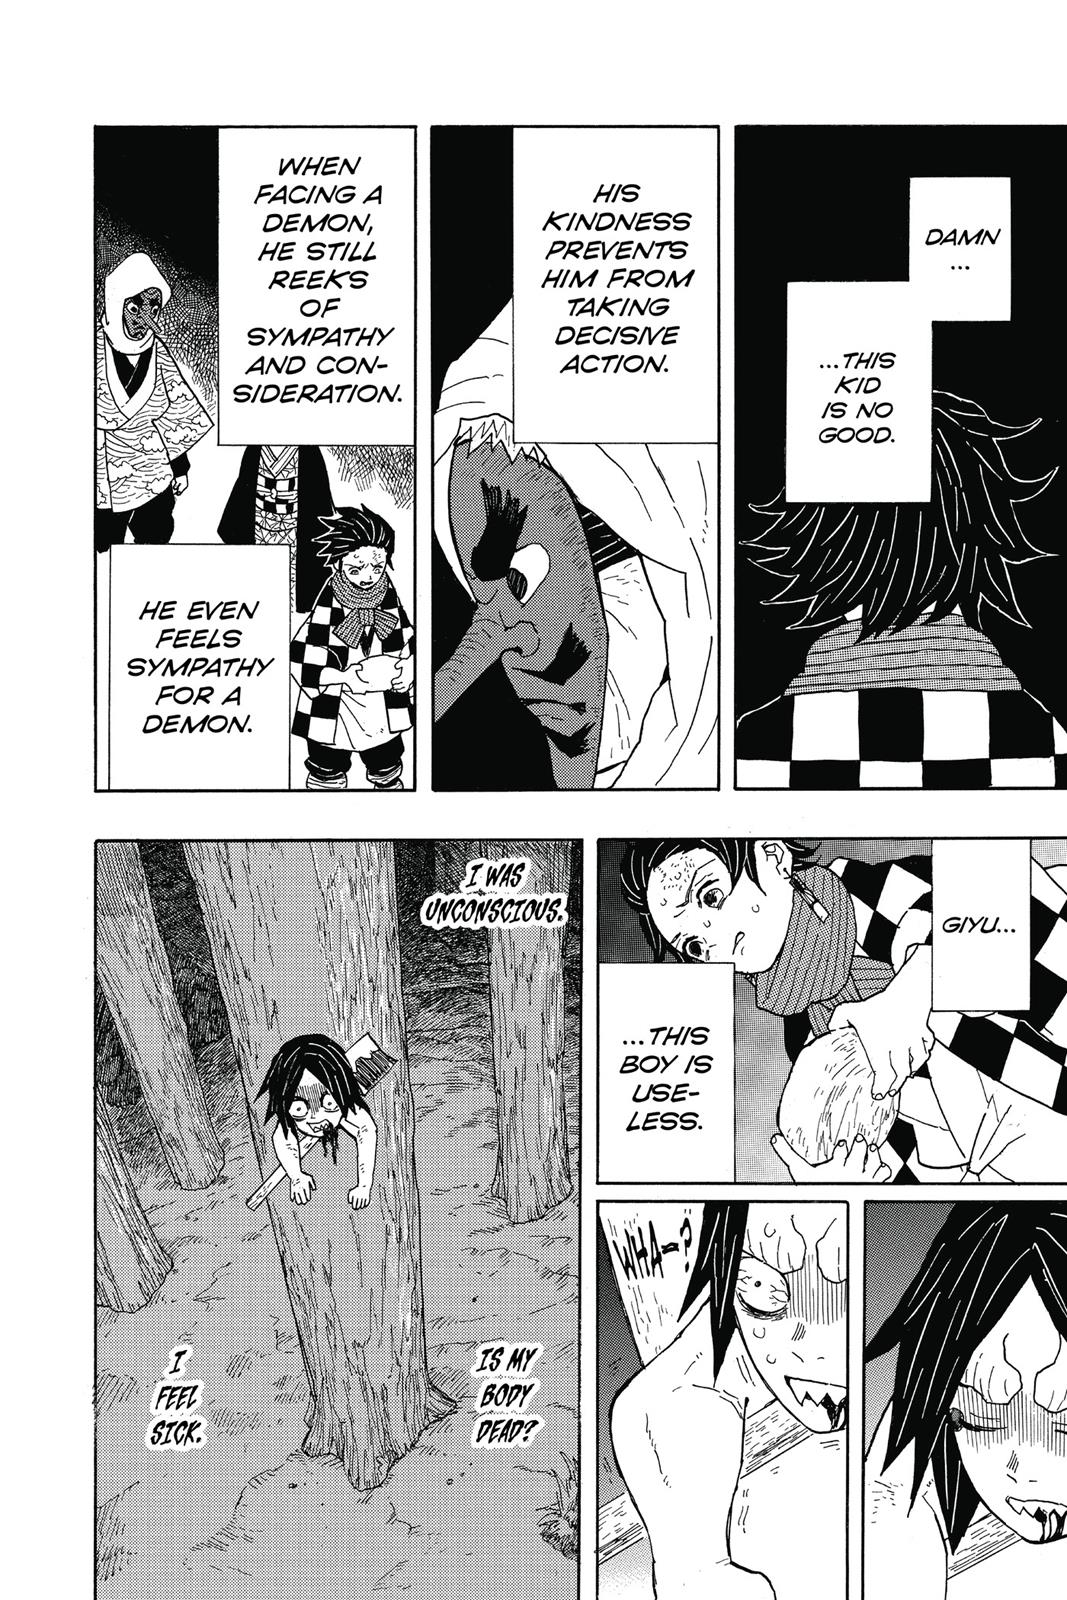 Demon Slayer Manga Manga Chapter - 3 - image 6